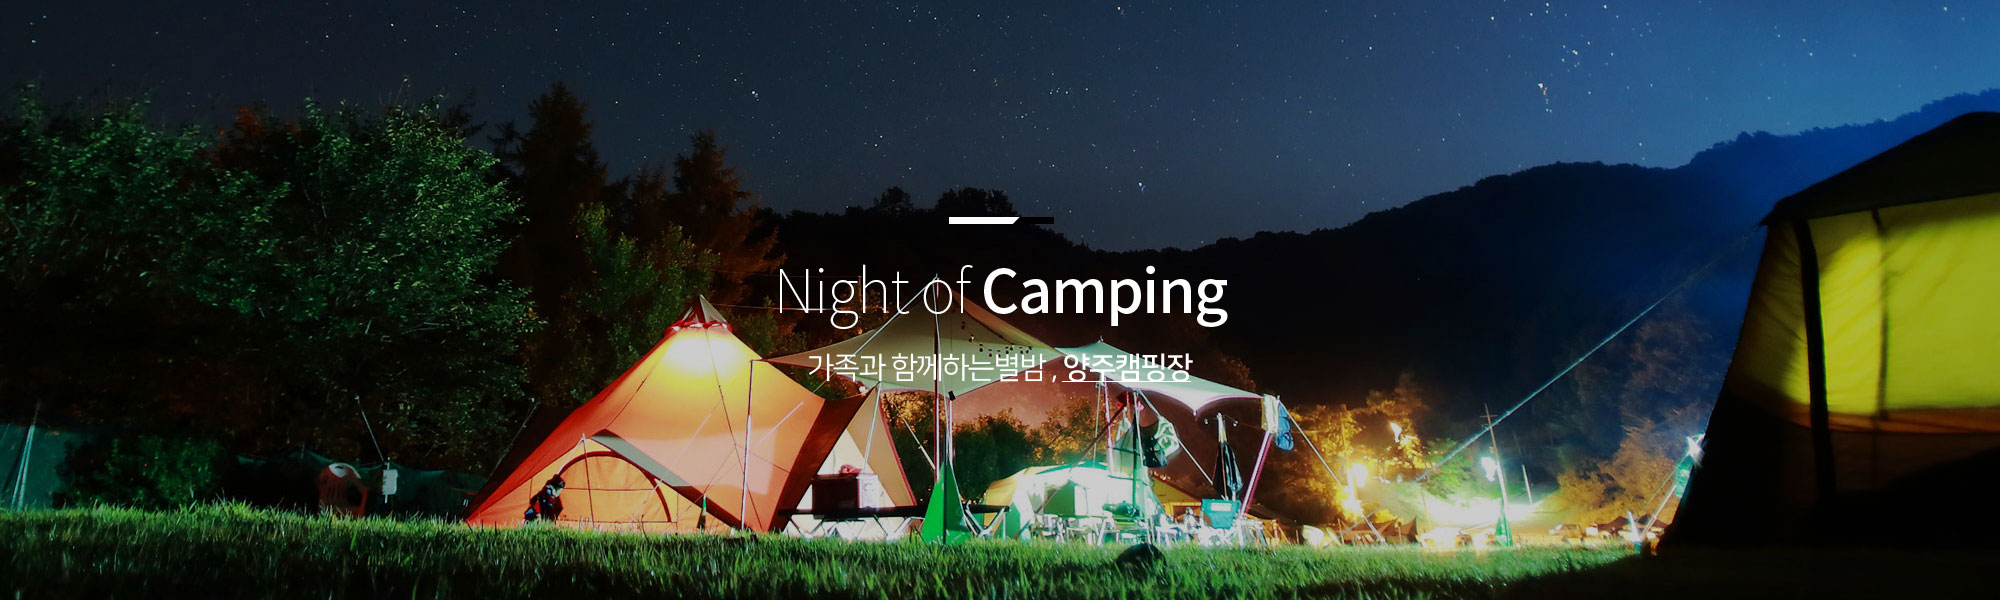 Night of Camping 가족과 함께하는별밤 , 양주캠핑장